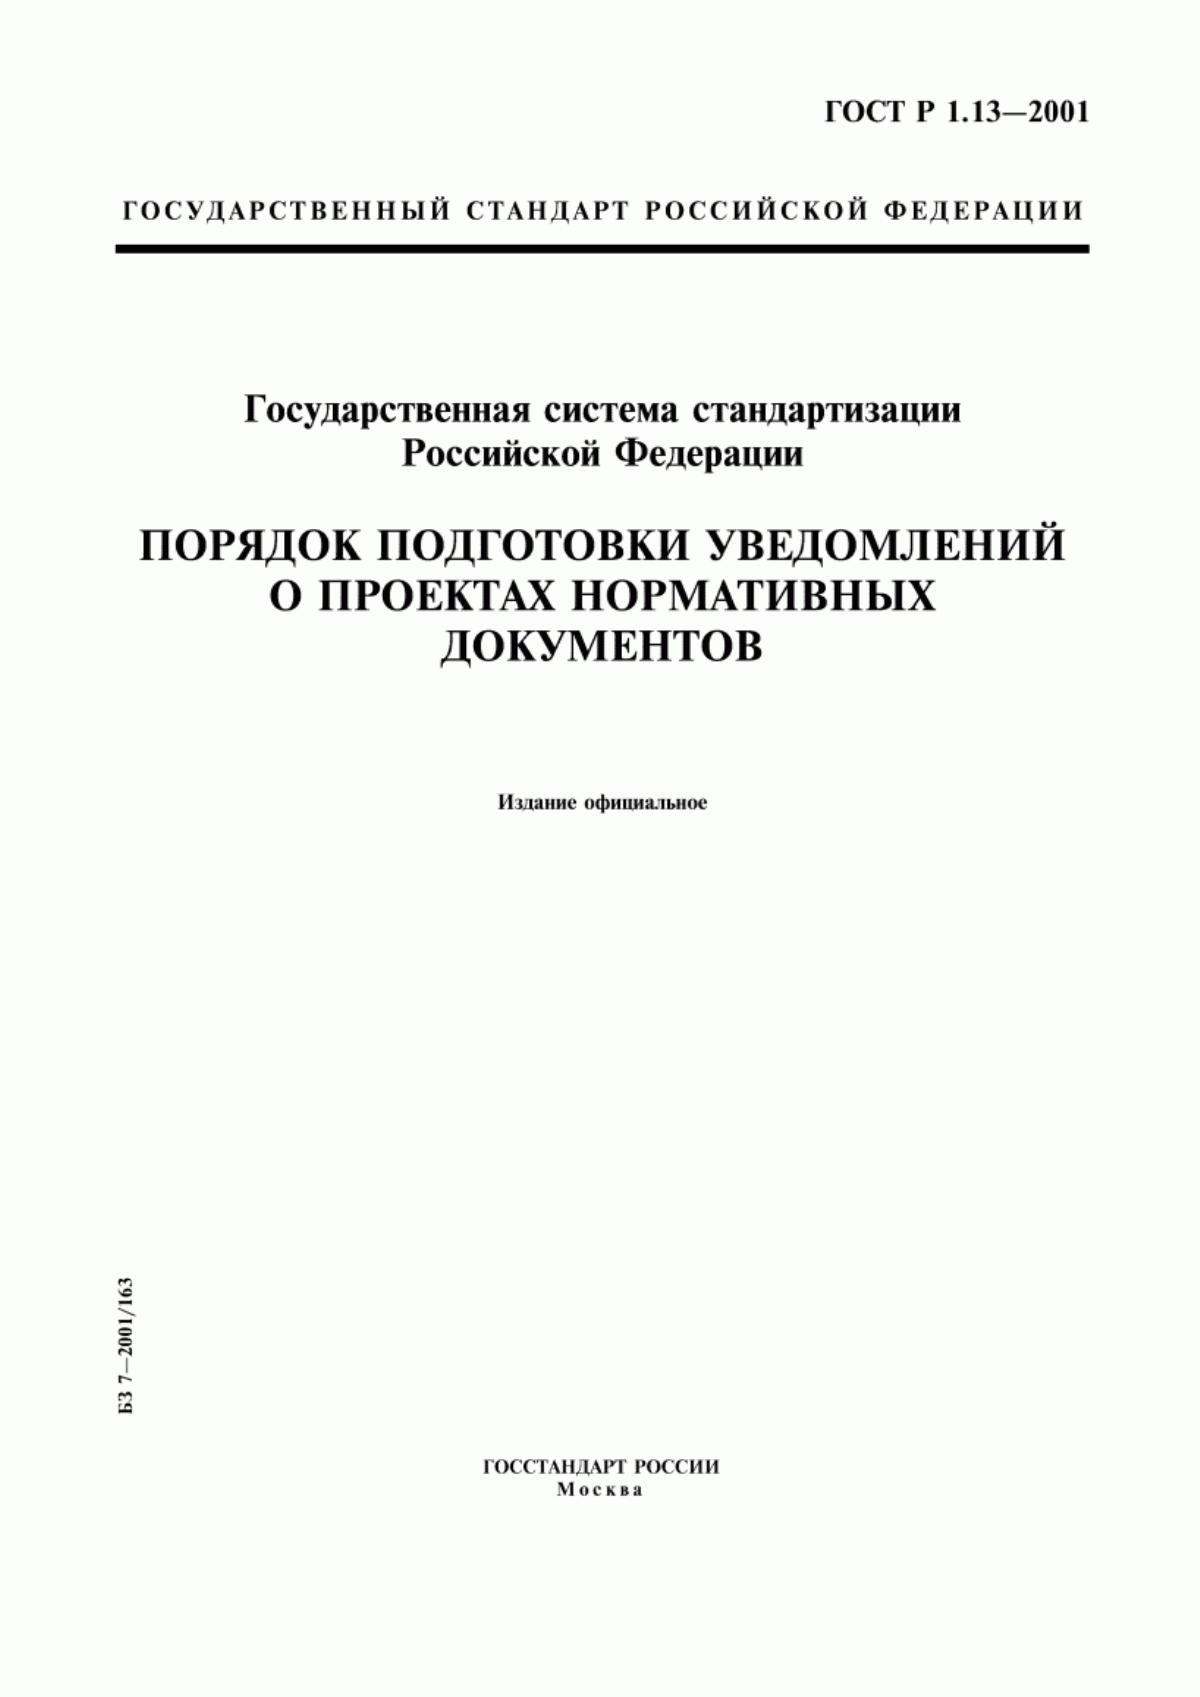 ГОСТ Р 1.13-2001 Государственная система стандартизации Российской Федерации. Порядок подготовки уведомлений о проектах нормативных документов